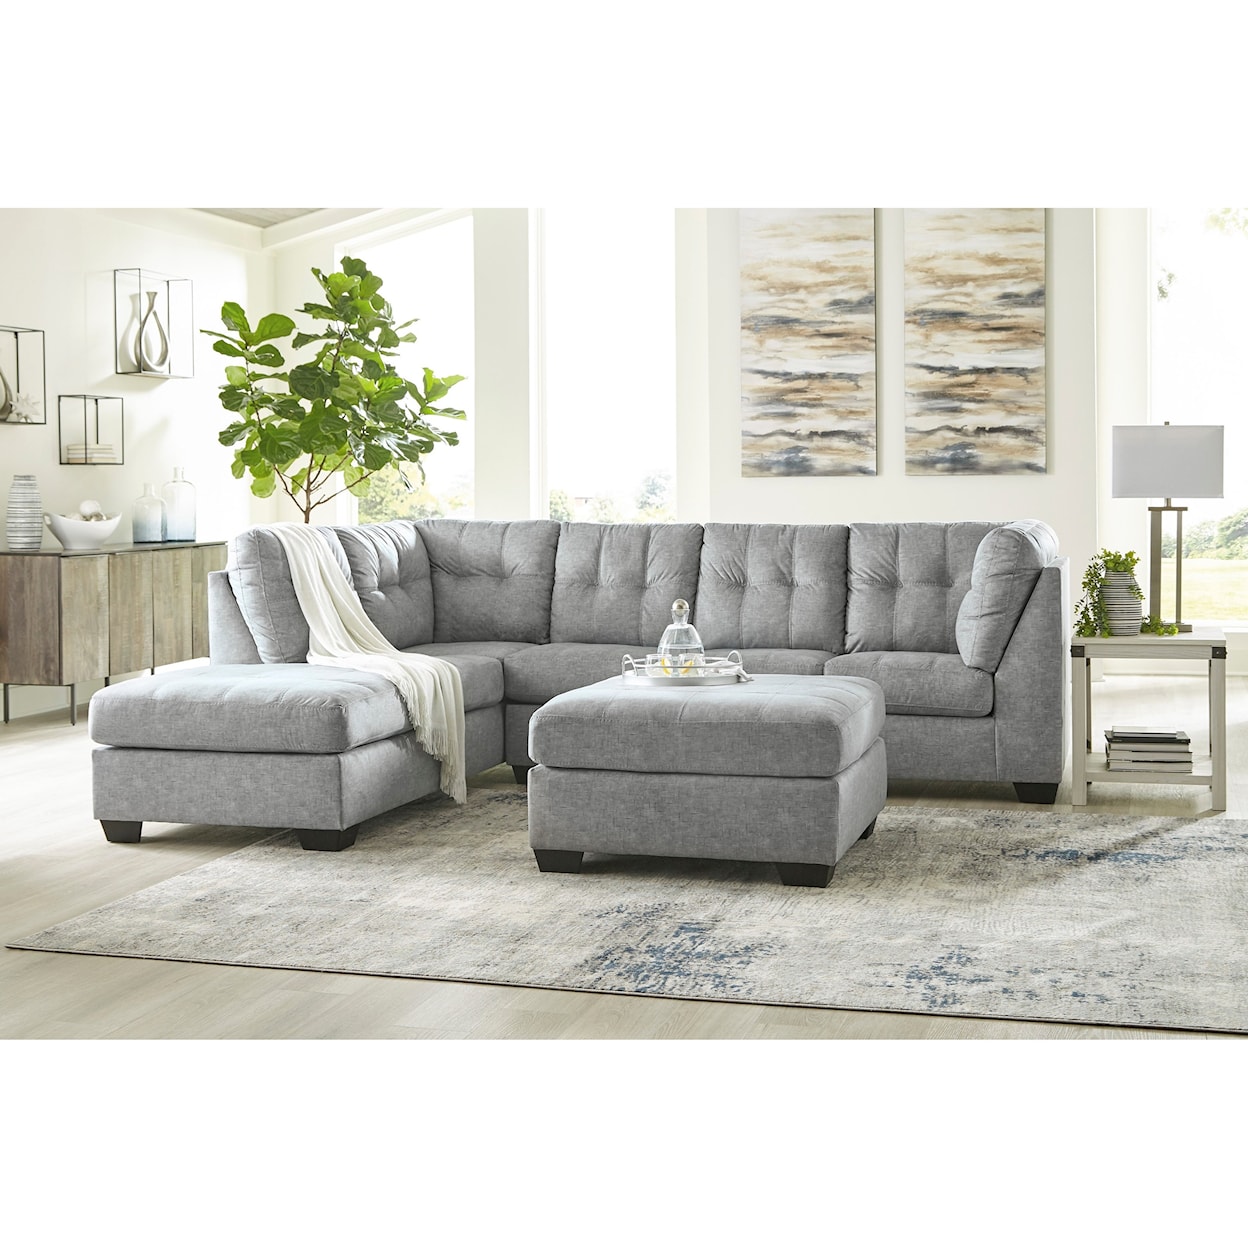 Ashley Furniture Benchcraft Falkirk Living Room Group